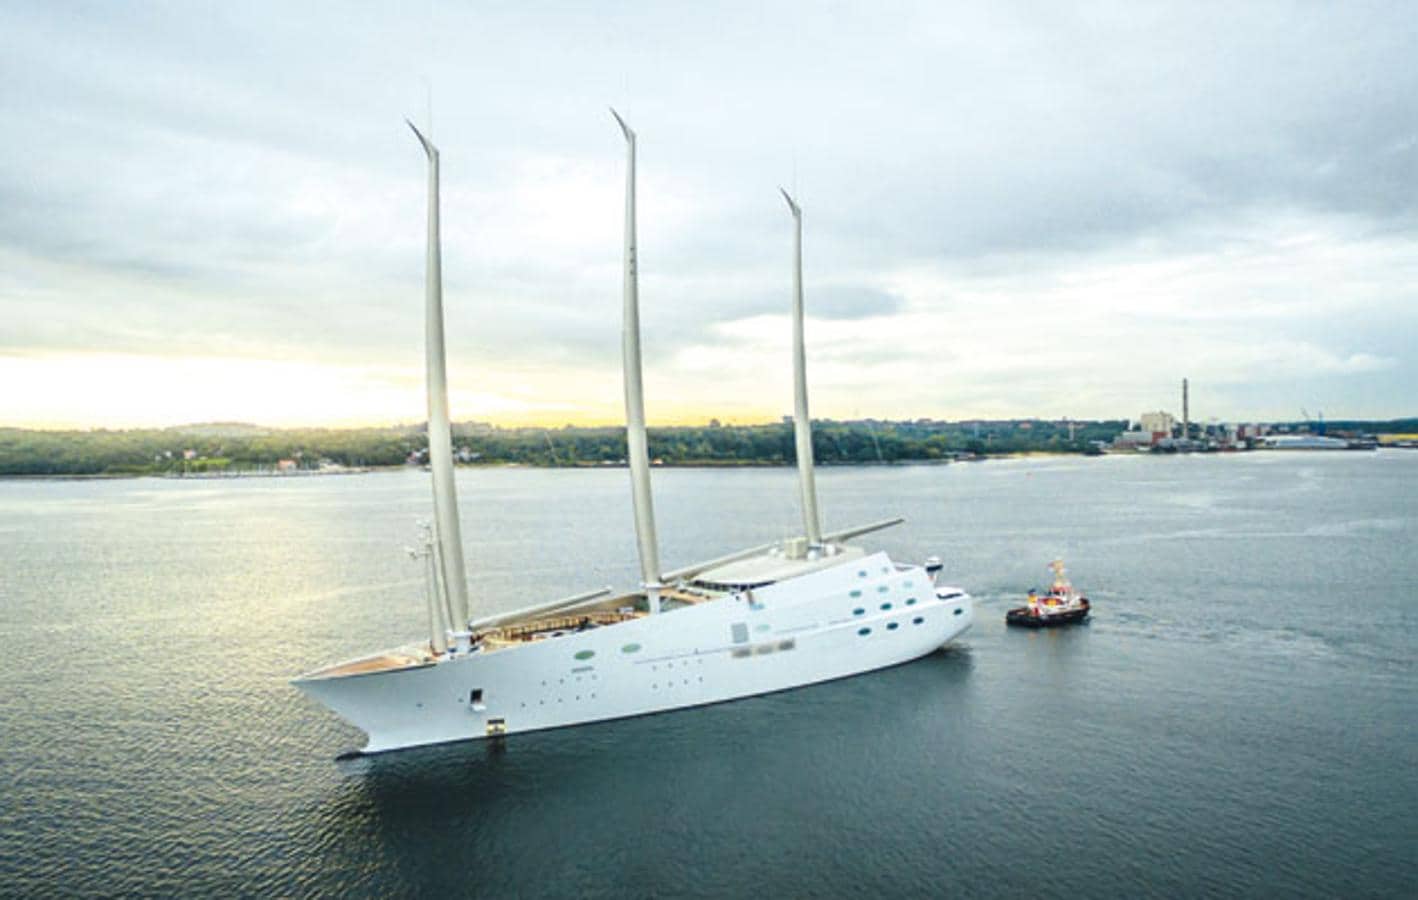 Sailing Yacht A. Este palacio flotante pertenece al empresario ruso Andrey Melnichenko